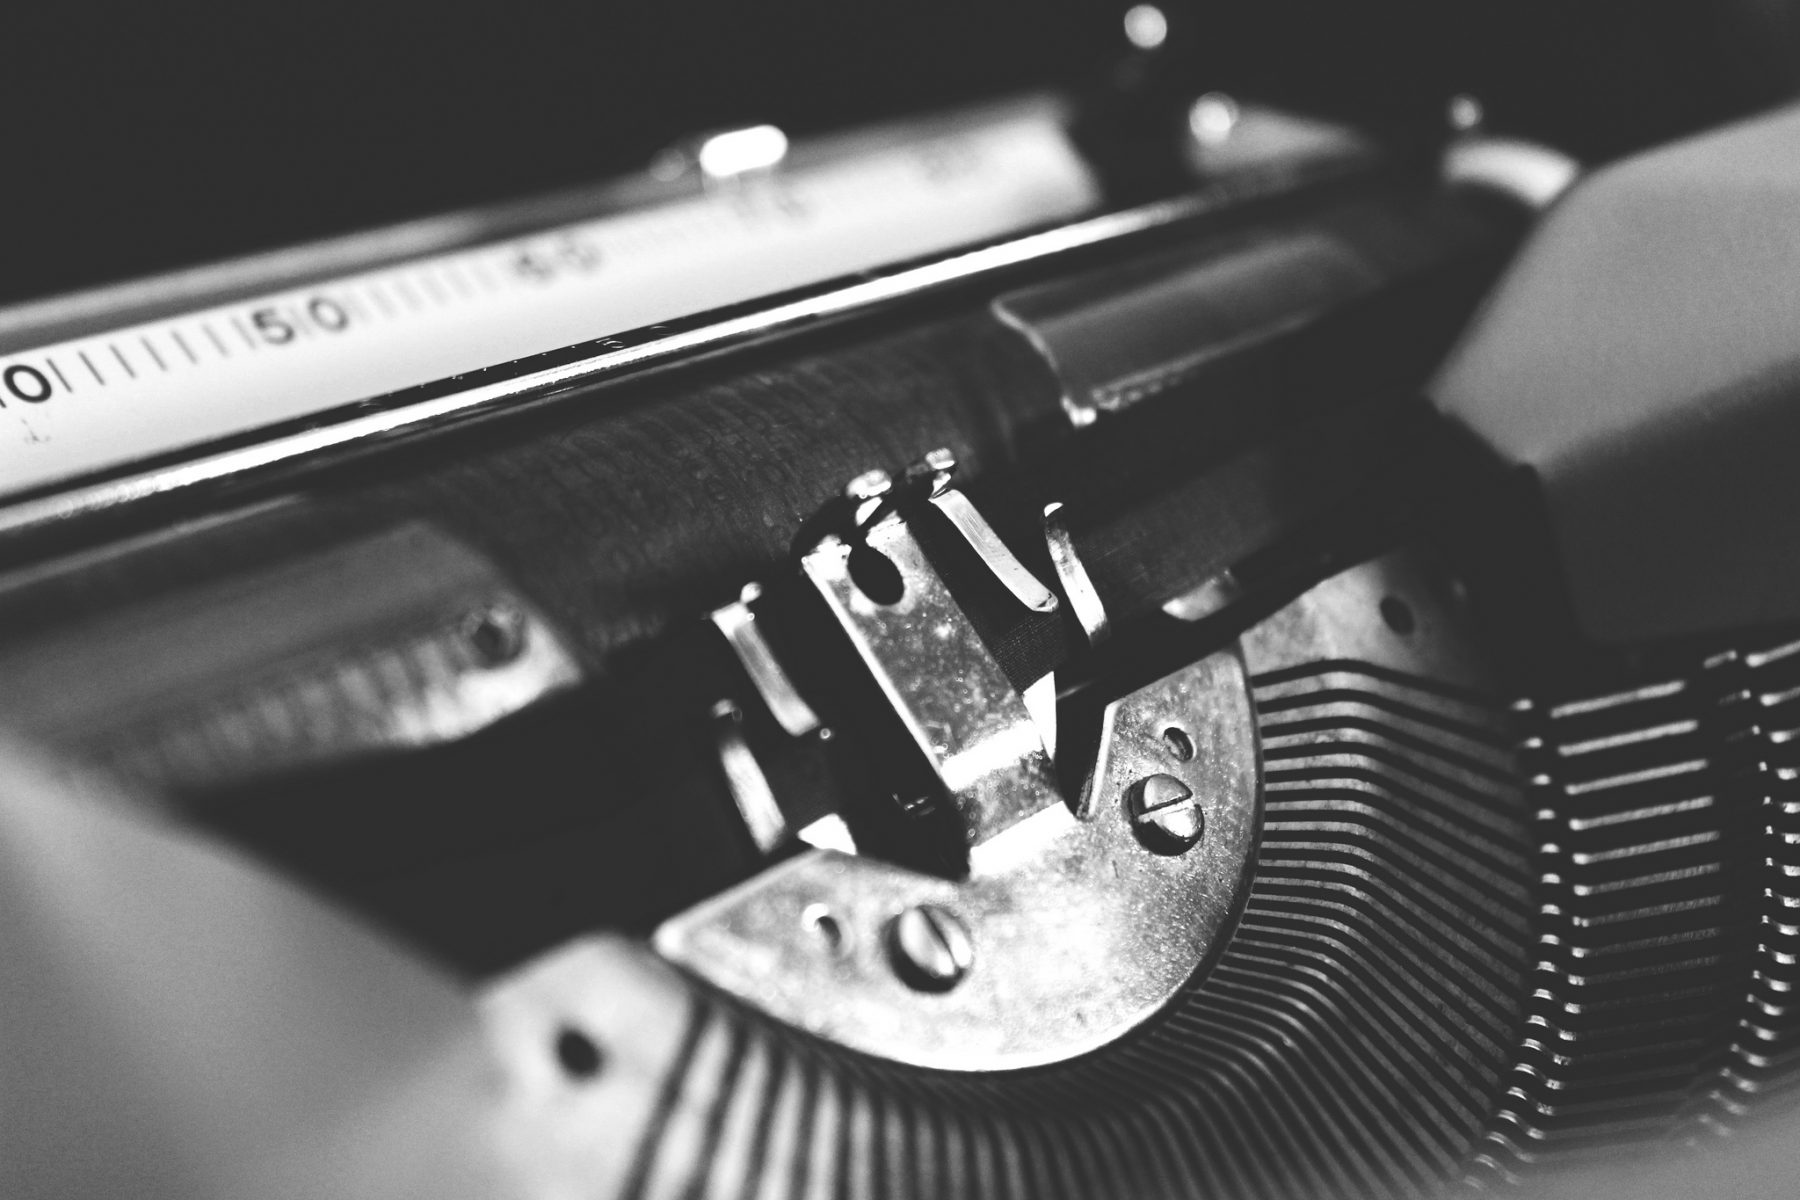 An image of a typewriter